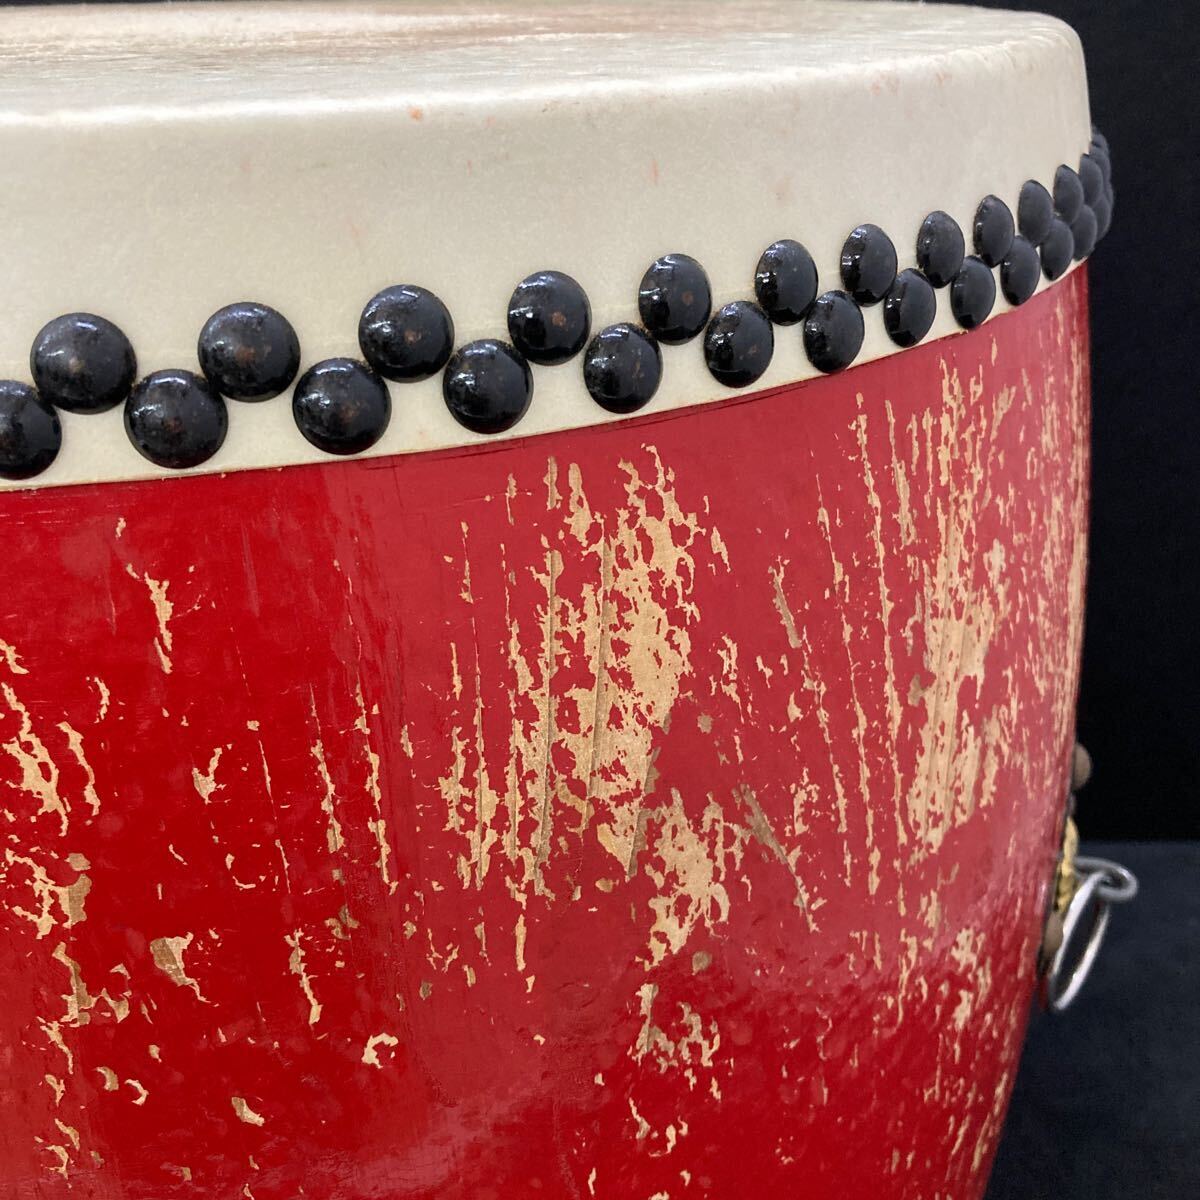  японский барабан futoshi тамбурин без тарелочек nagadodaiko один размер . сяку красный праздник барабан традиционные японские музыкальные инструменты ударные инструменты наклонный шт. есть ②